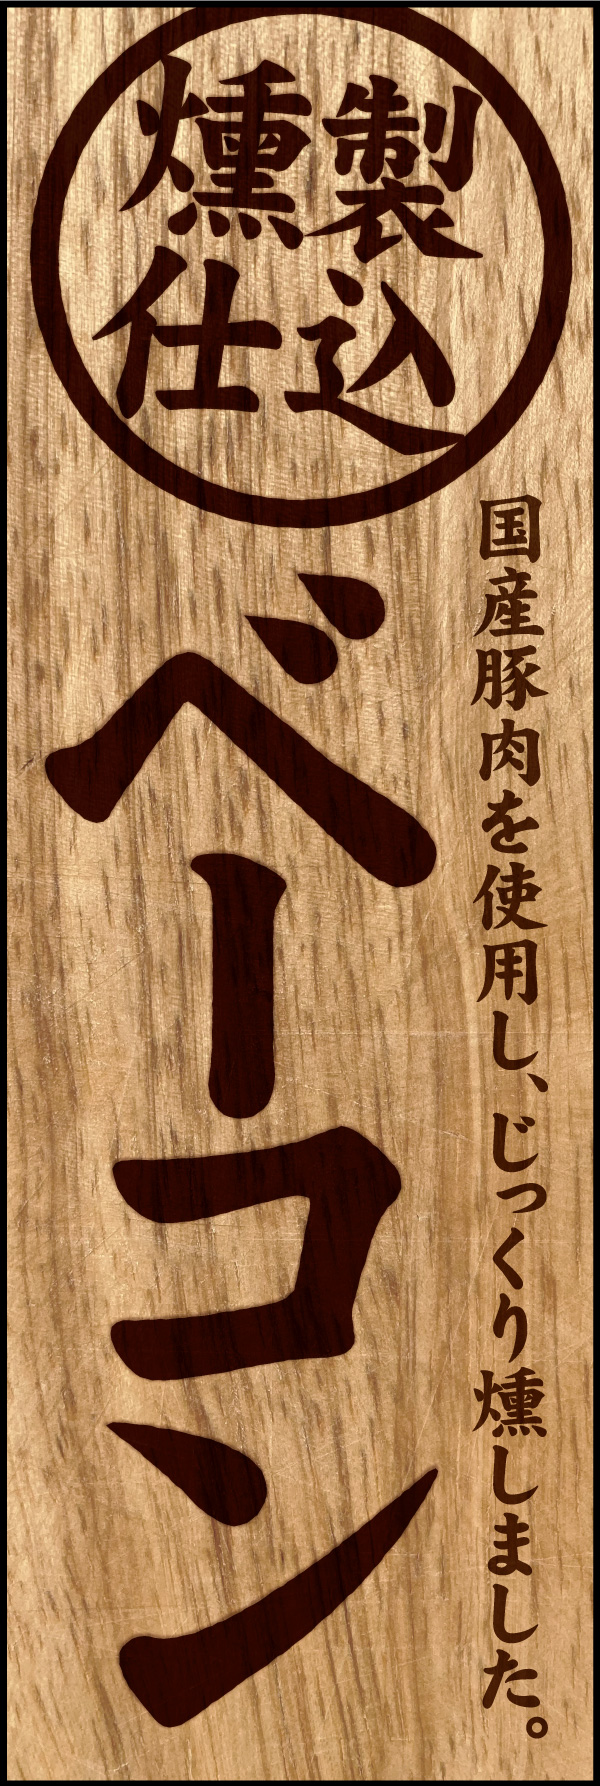 ベーコン 01「ベーコン」ののぼりです。木材に焼印された文字をモチーフに、じっくり燻製された手作りベーコンをイメージしてデザインしました。(Y.M) 